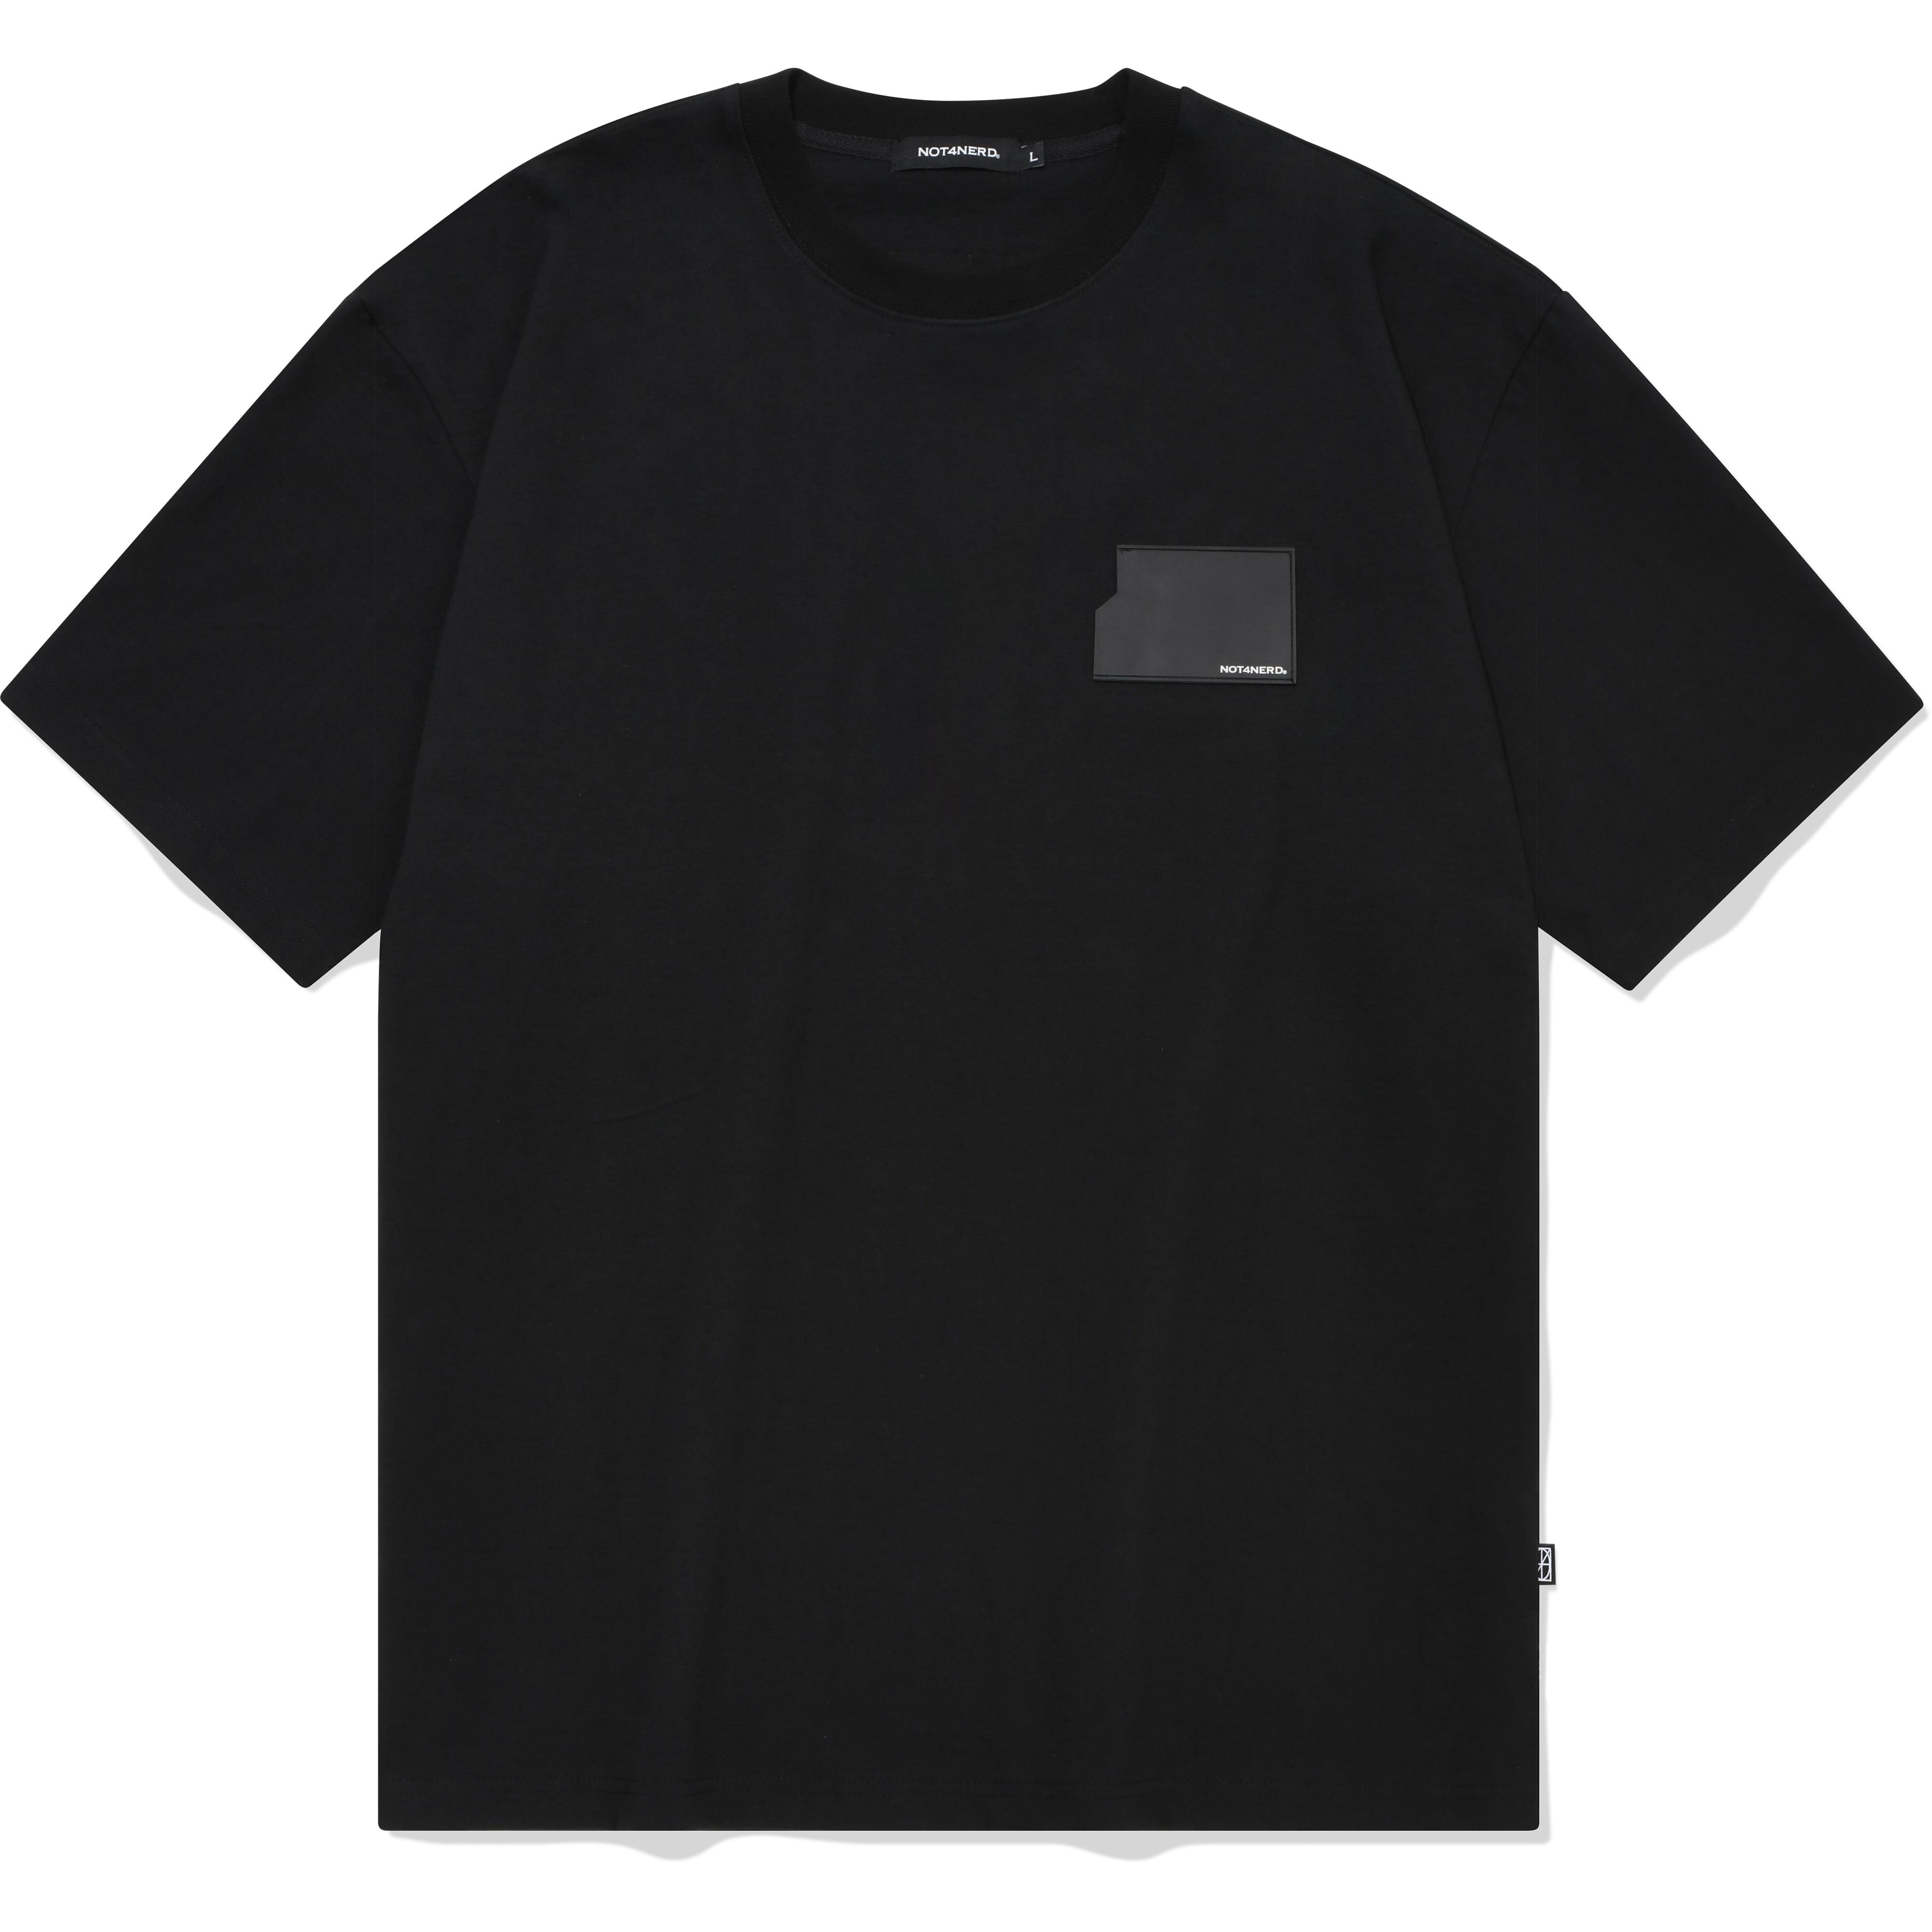 Card Wallet Logo T-Shirts Black,NOT4NERD